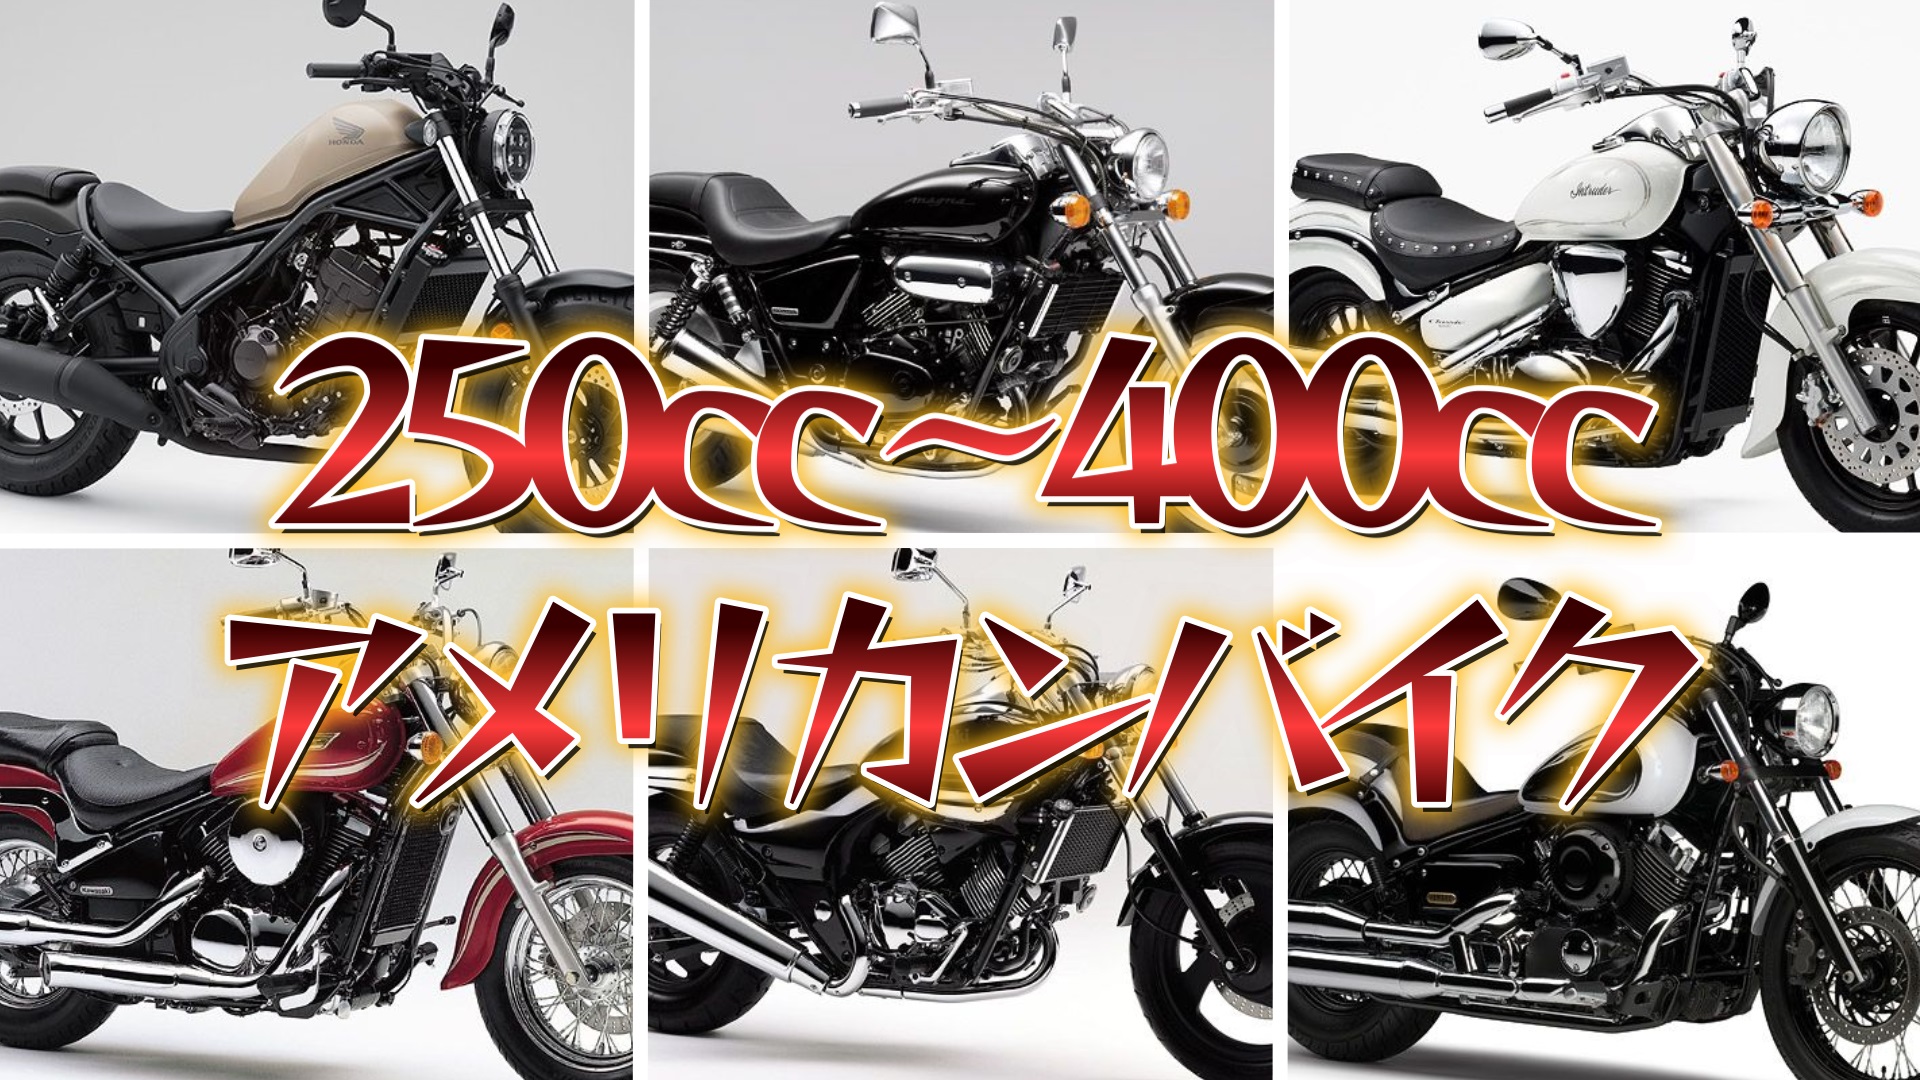 ジャンル別バイク紹介 アメリカンバイク編 250cc 400cc Masa S Motor Life Blog